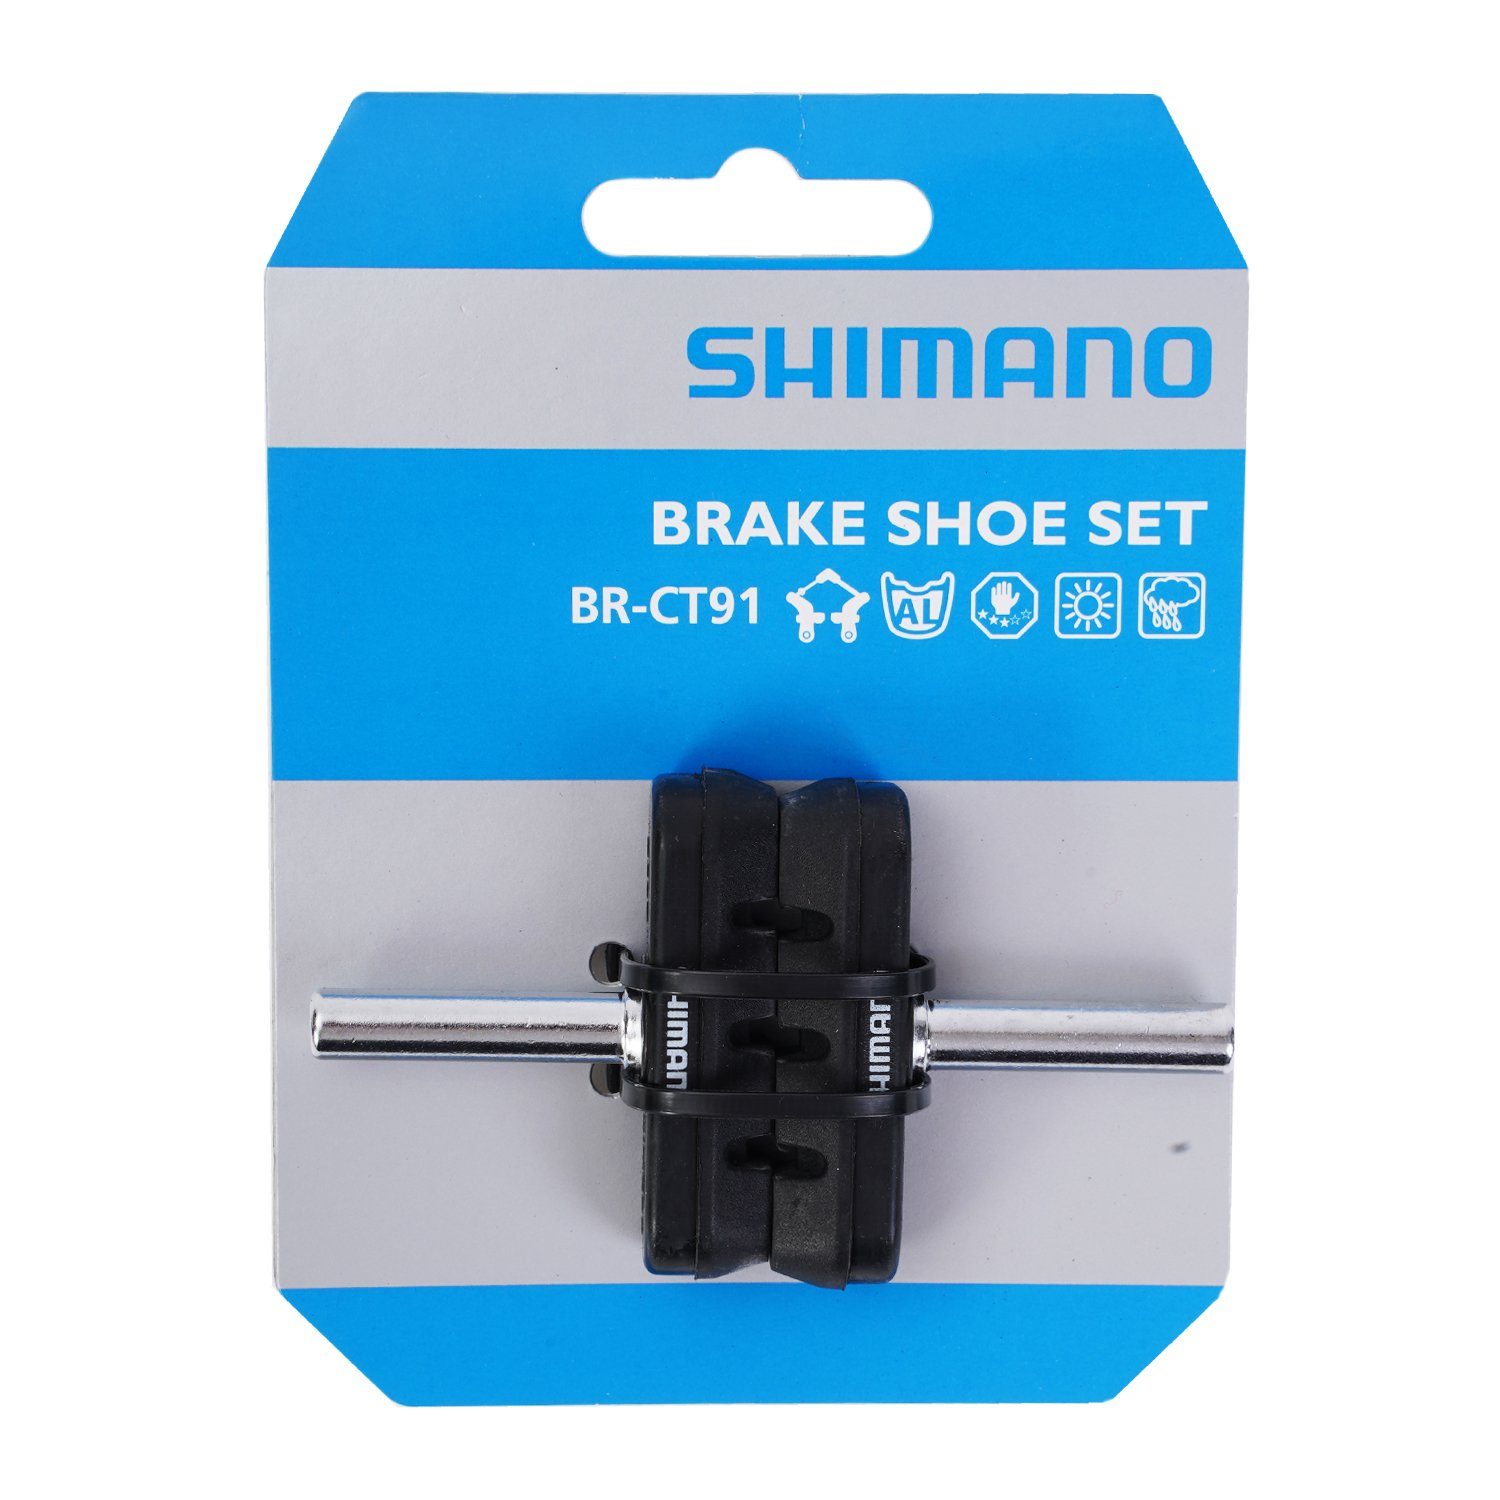 BR-CT91 Shimano Bremsbeläge Bremse Cantilever Mittelzug 2x Bremsklotz-Satz Bremsbelag, Cantilever-Bremse